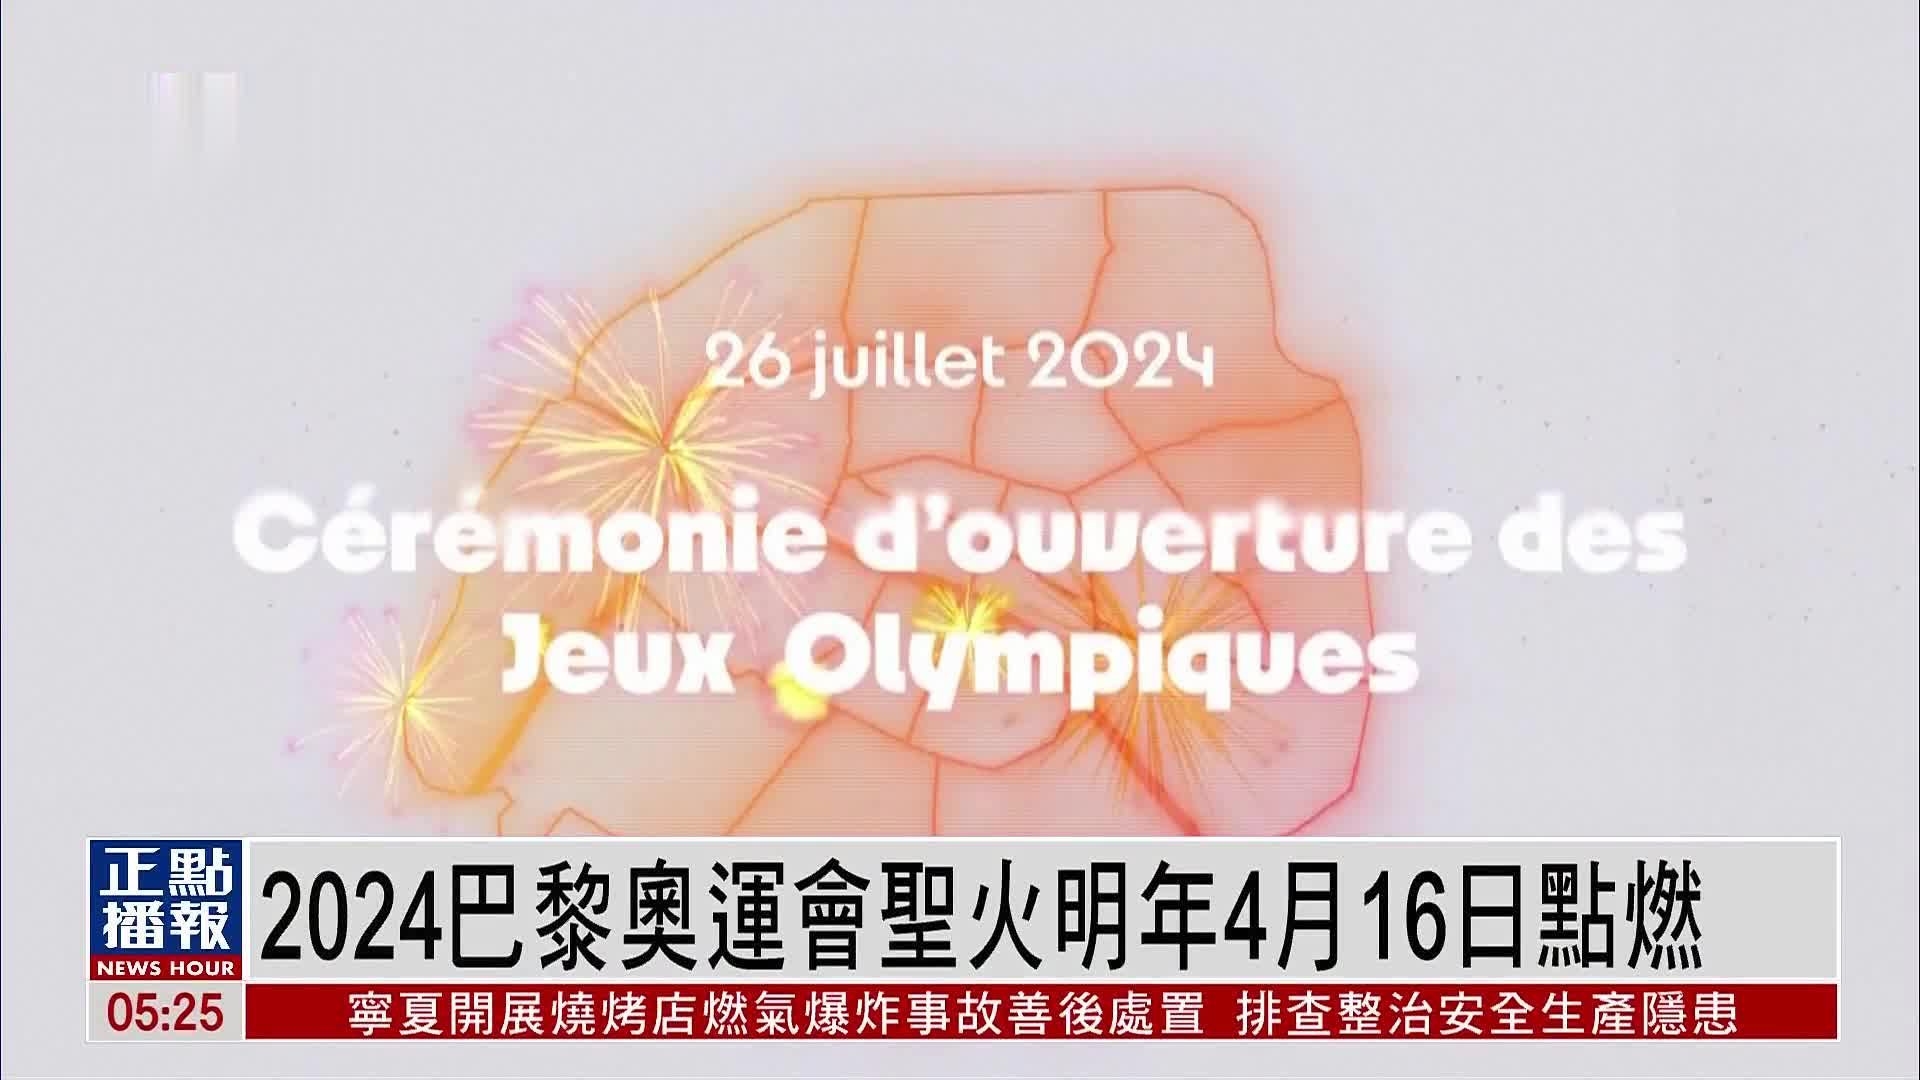 巴黎2024夏季奥运火炬概念 - 普象网